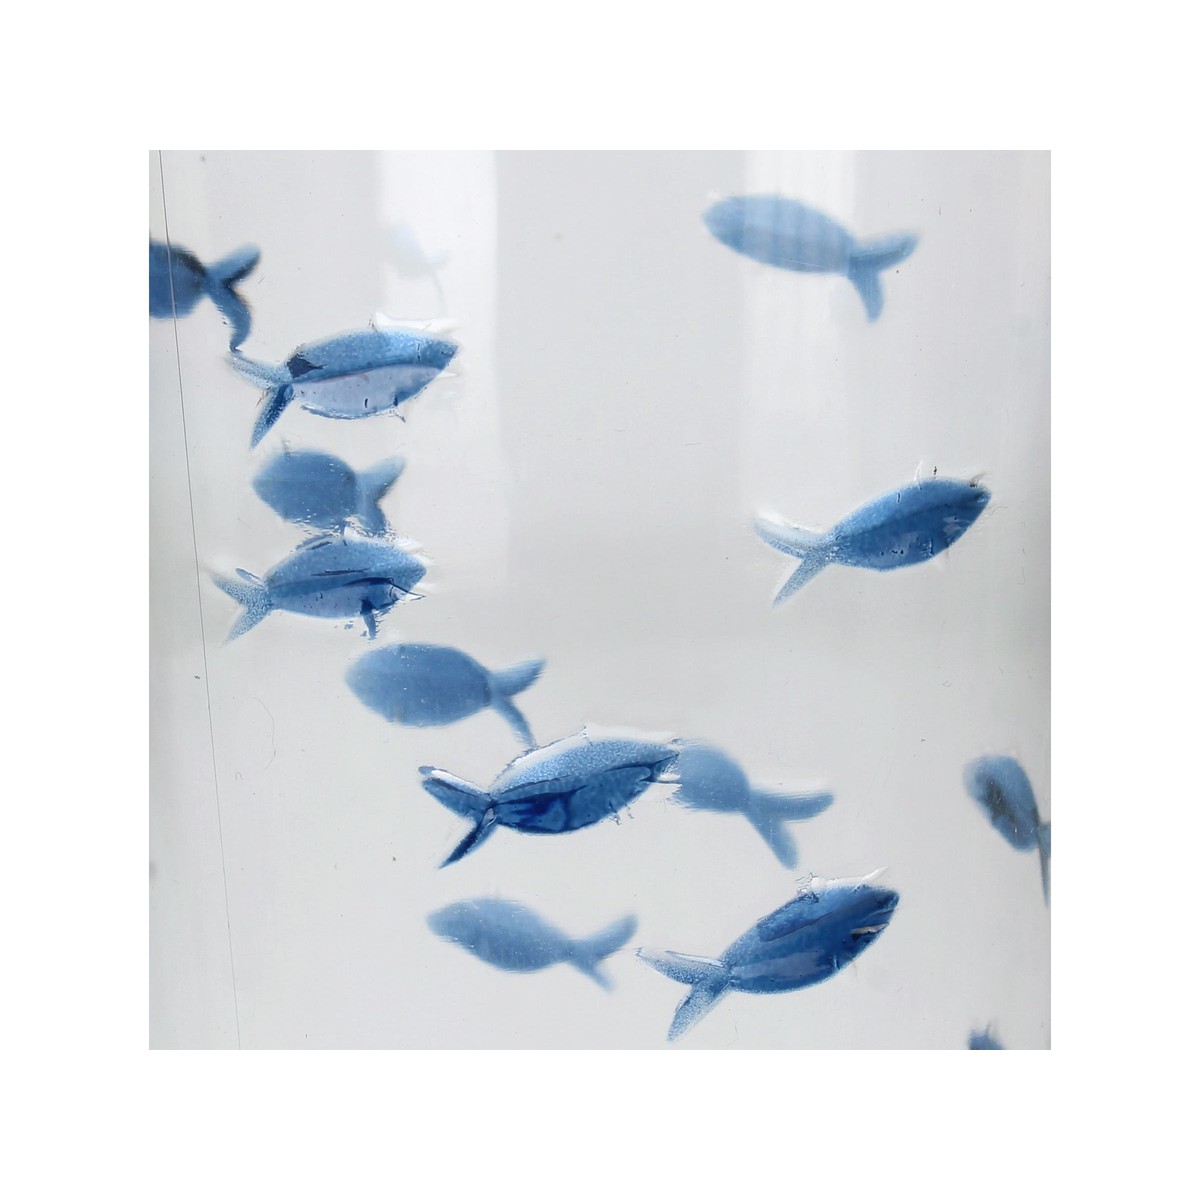 Schilliger Sélection  Verre poissons bleu en acrylique  9x9x15.3cm